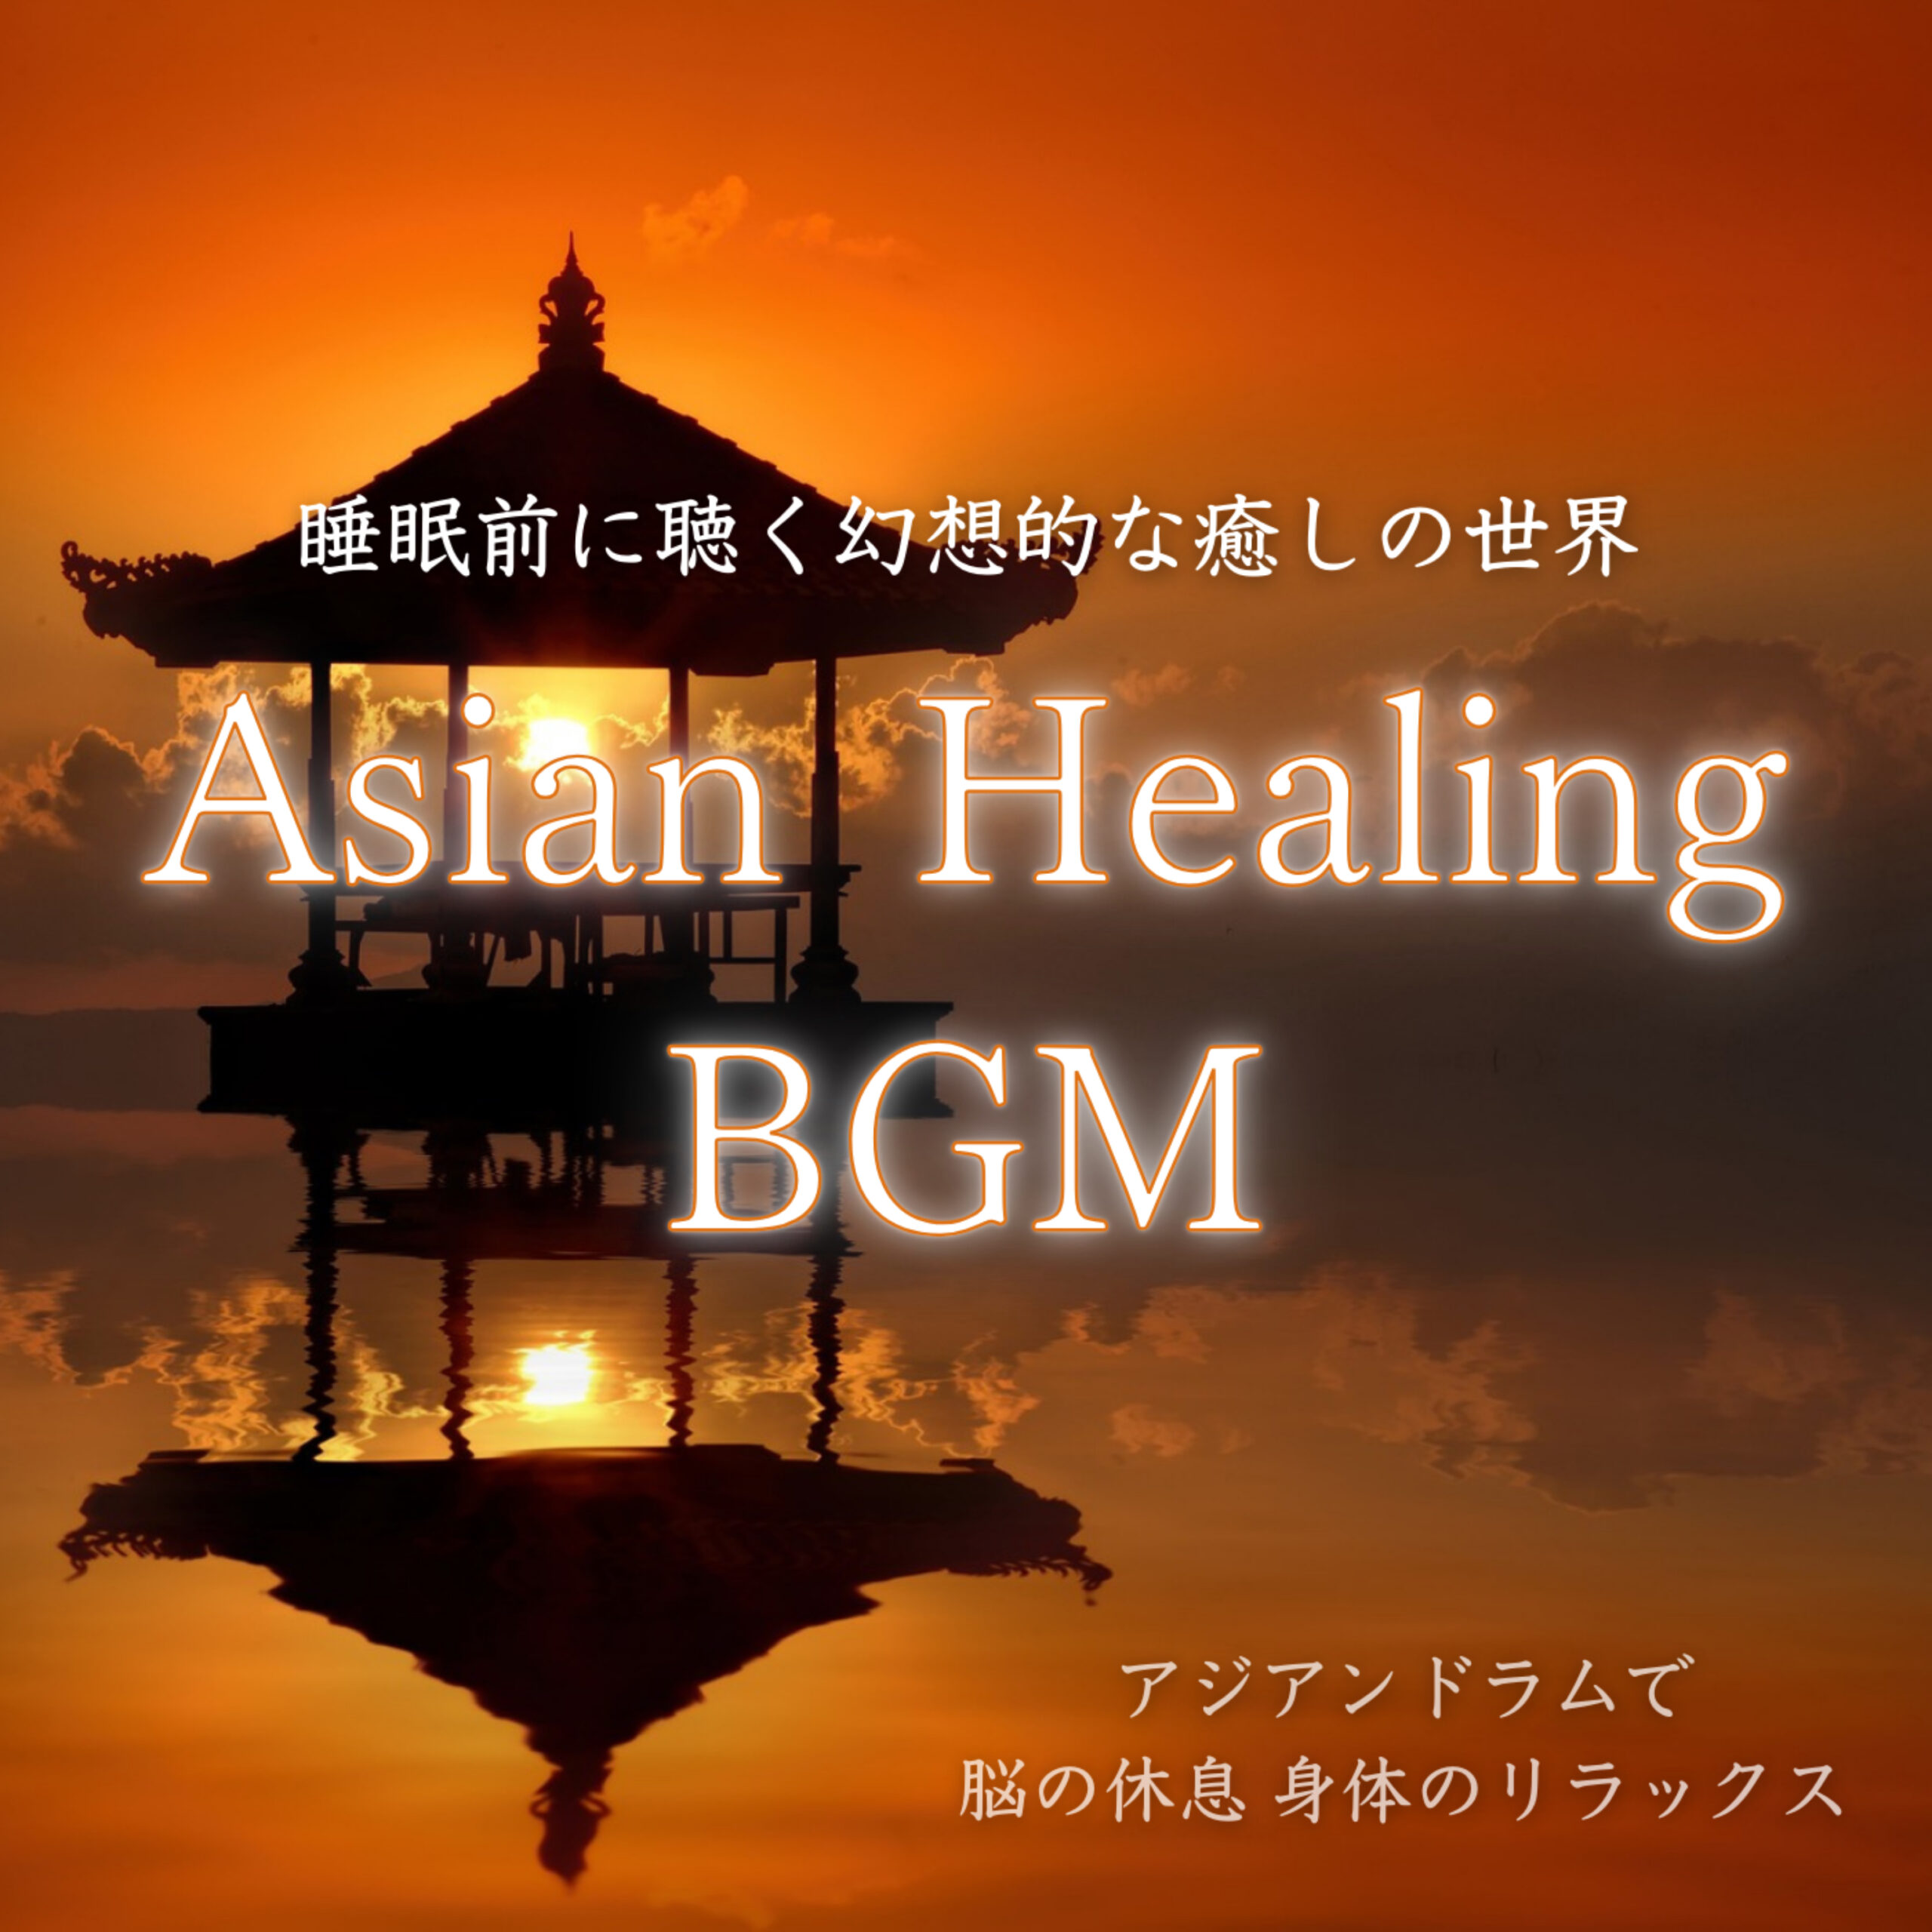 Asian Healing BGM 睡眠前に聴く幻想的な癒しの世界 -アジアンドラムで脳の休息 身体のリラックス-